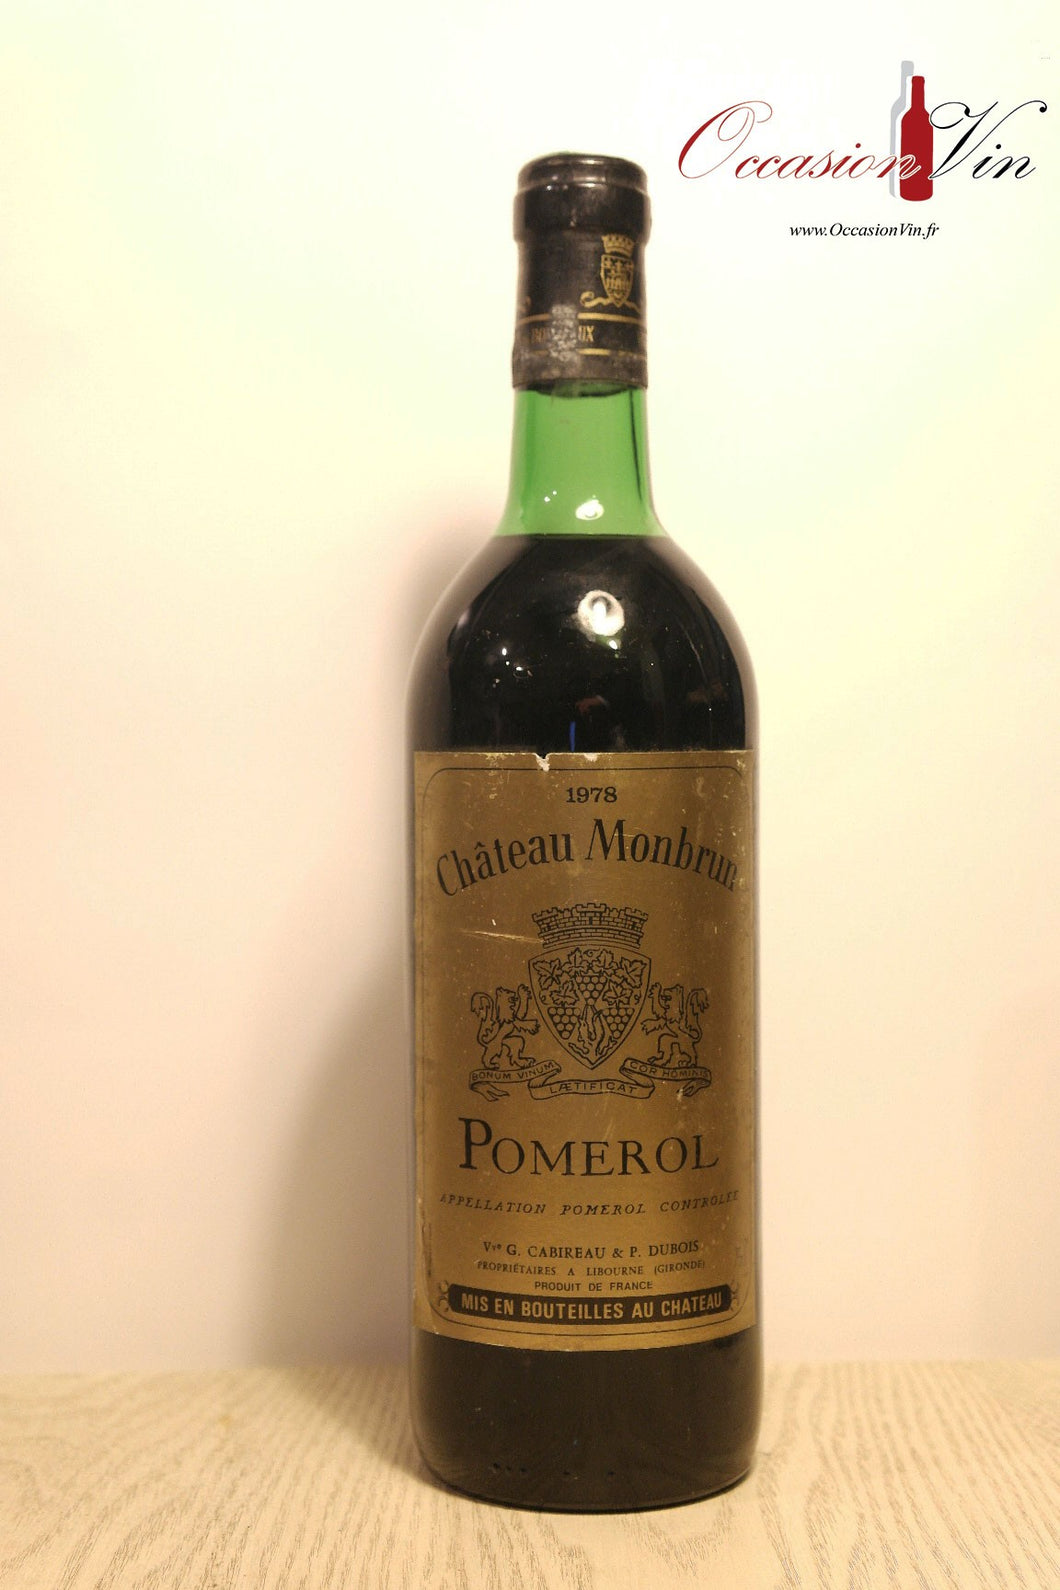 Château Monbrun Vin 1978